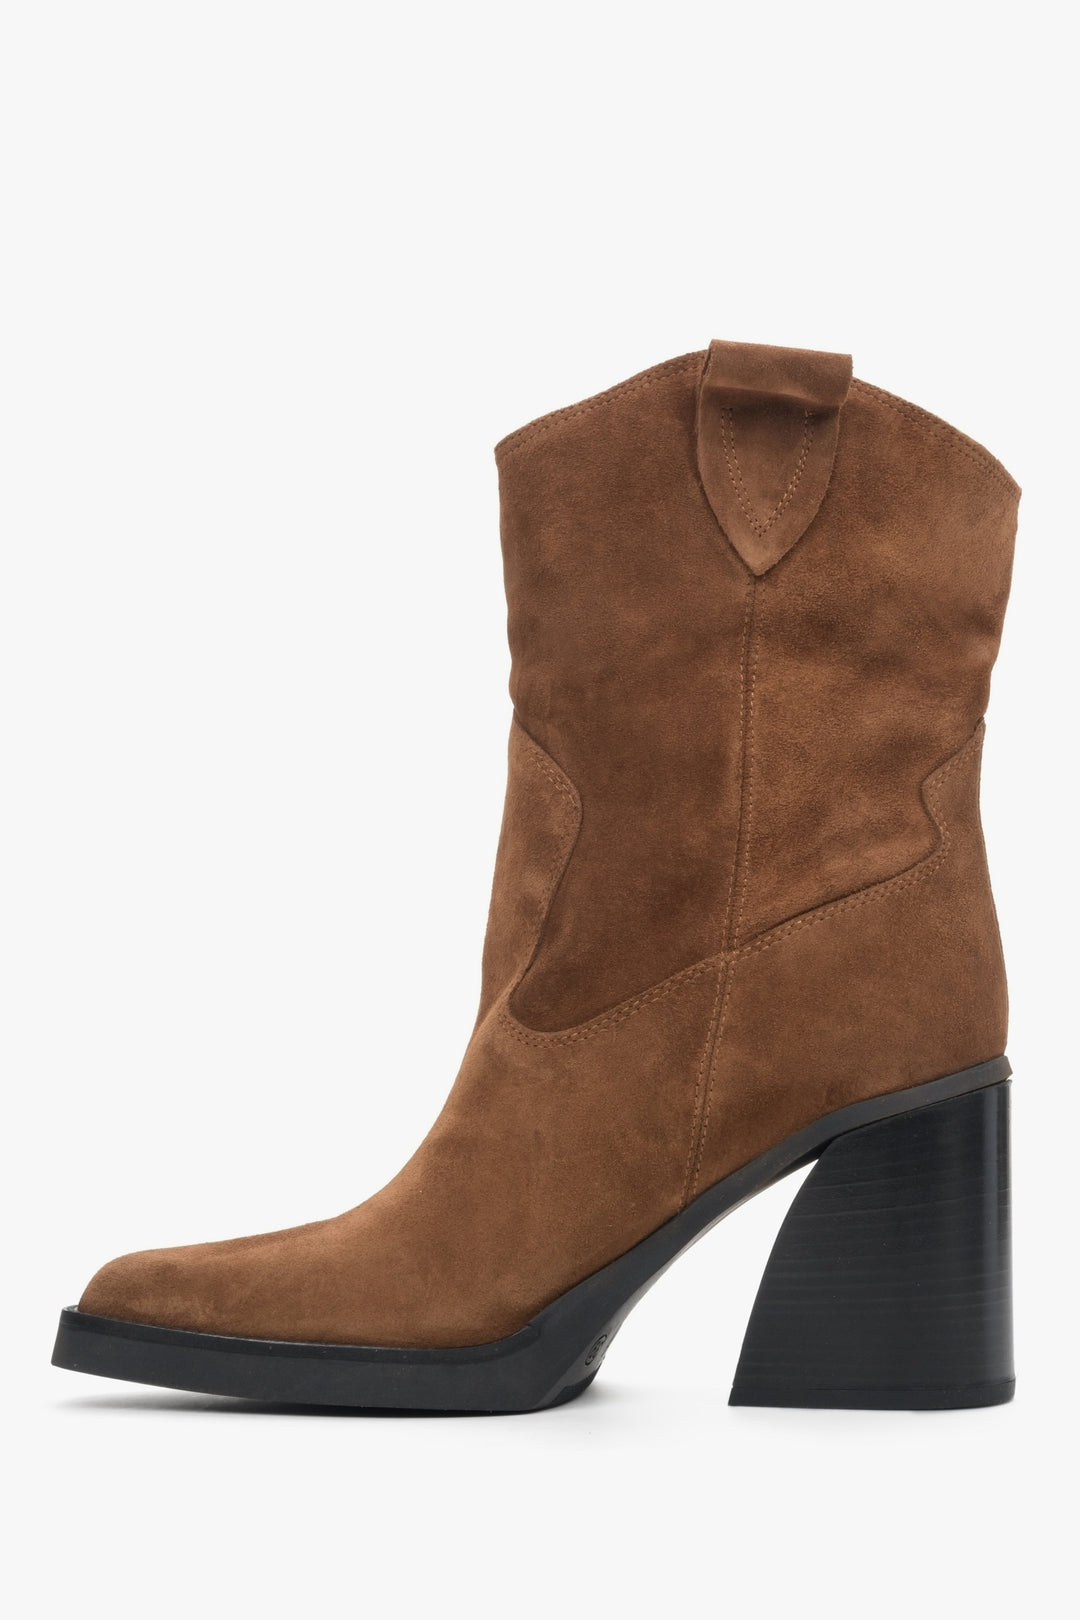 Brown suede heeled cowboy boots by Estro - shoe profile.